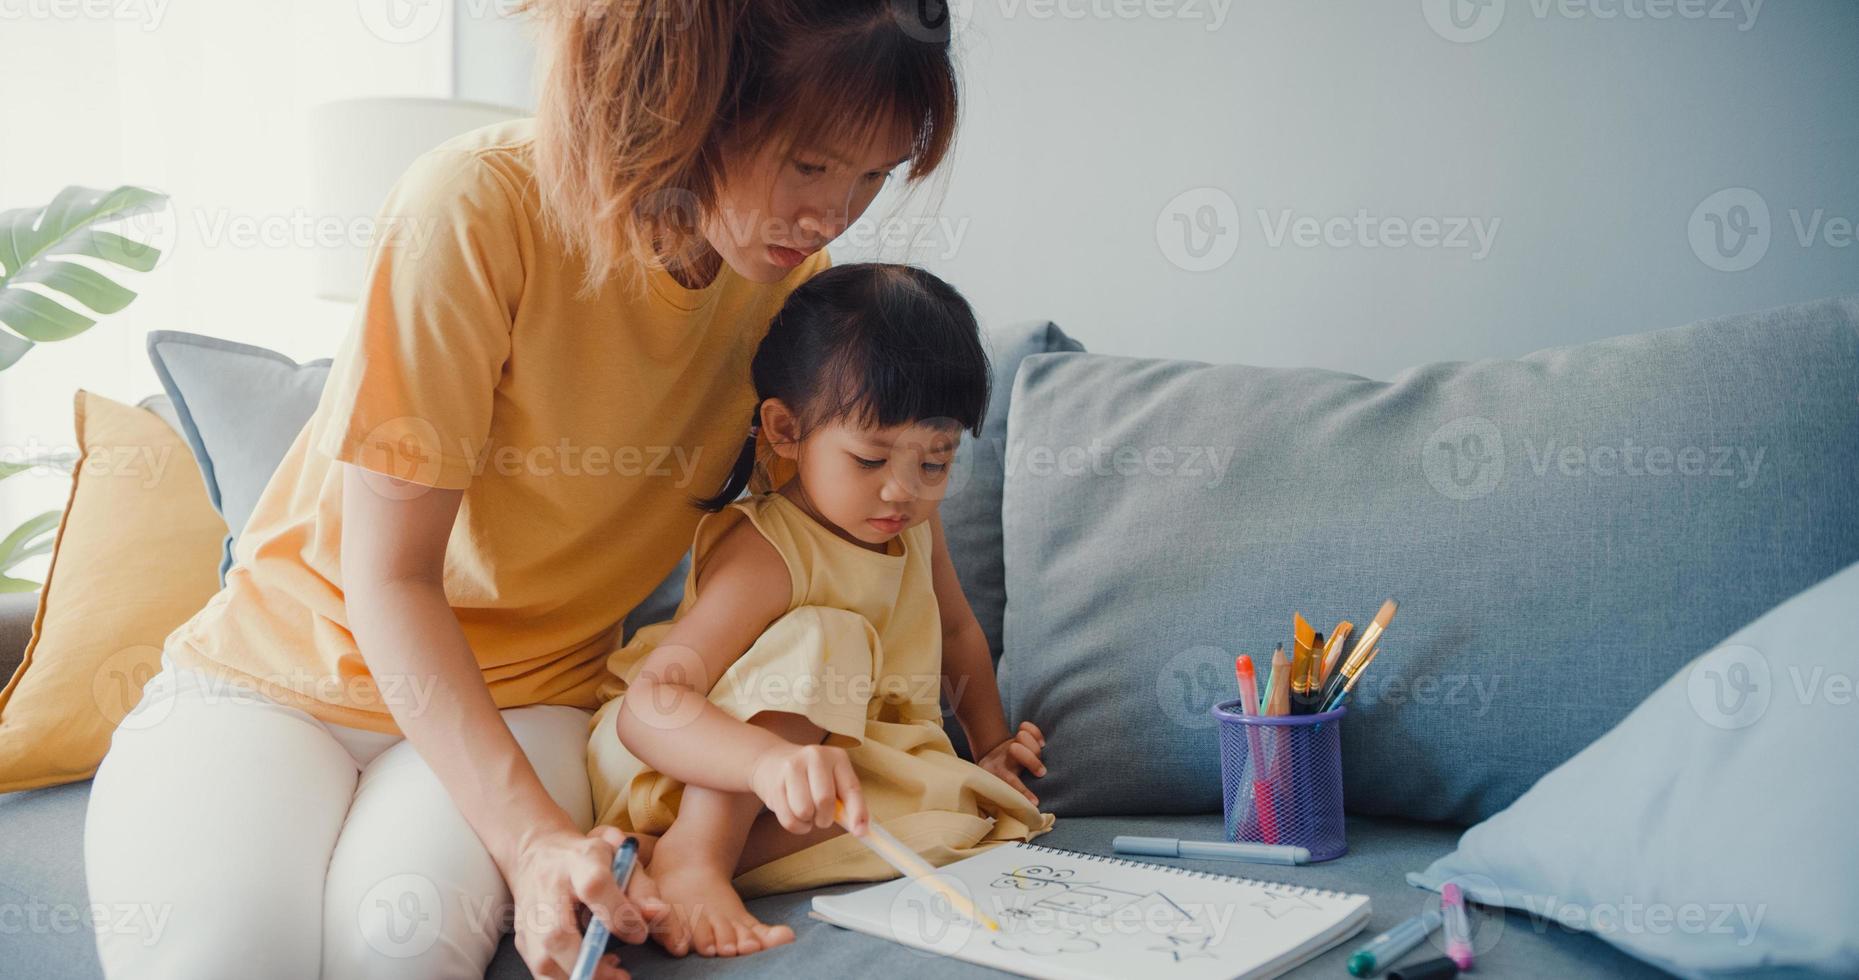 gelukkige vrolijke azië familie moeder leert meisje verf gebruiken album en kleurrijke potloden plezier ontspannen op de bank in de woonkamer thuis. tijd samen doorbrengen, sociale afstand, quarantaine voor coronavirus. foto